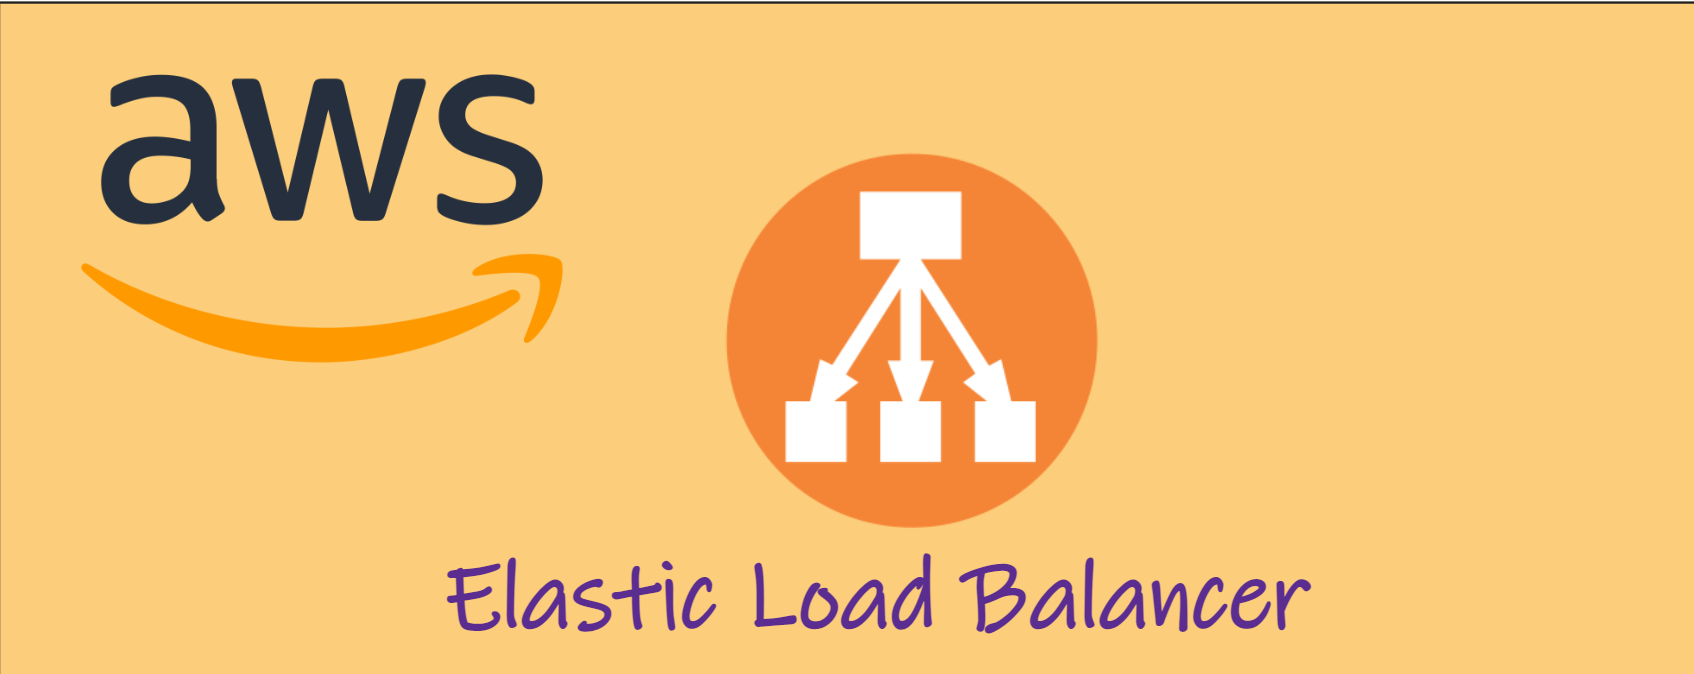 Elastic Load Balancer (ELB)